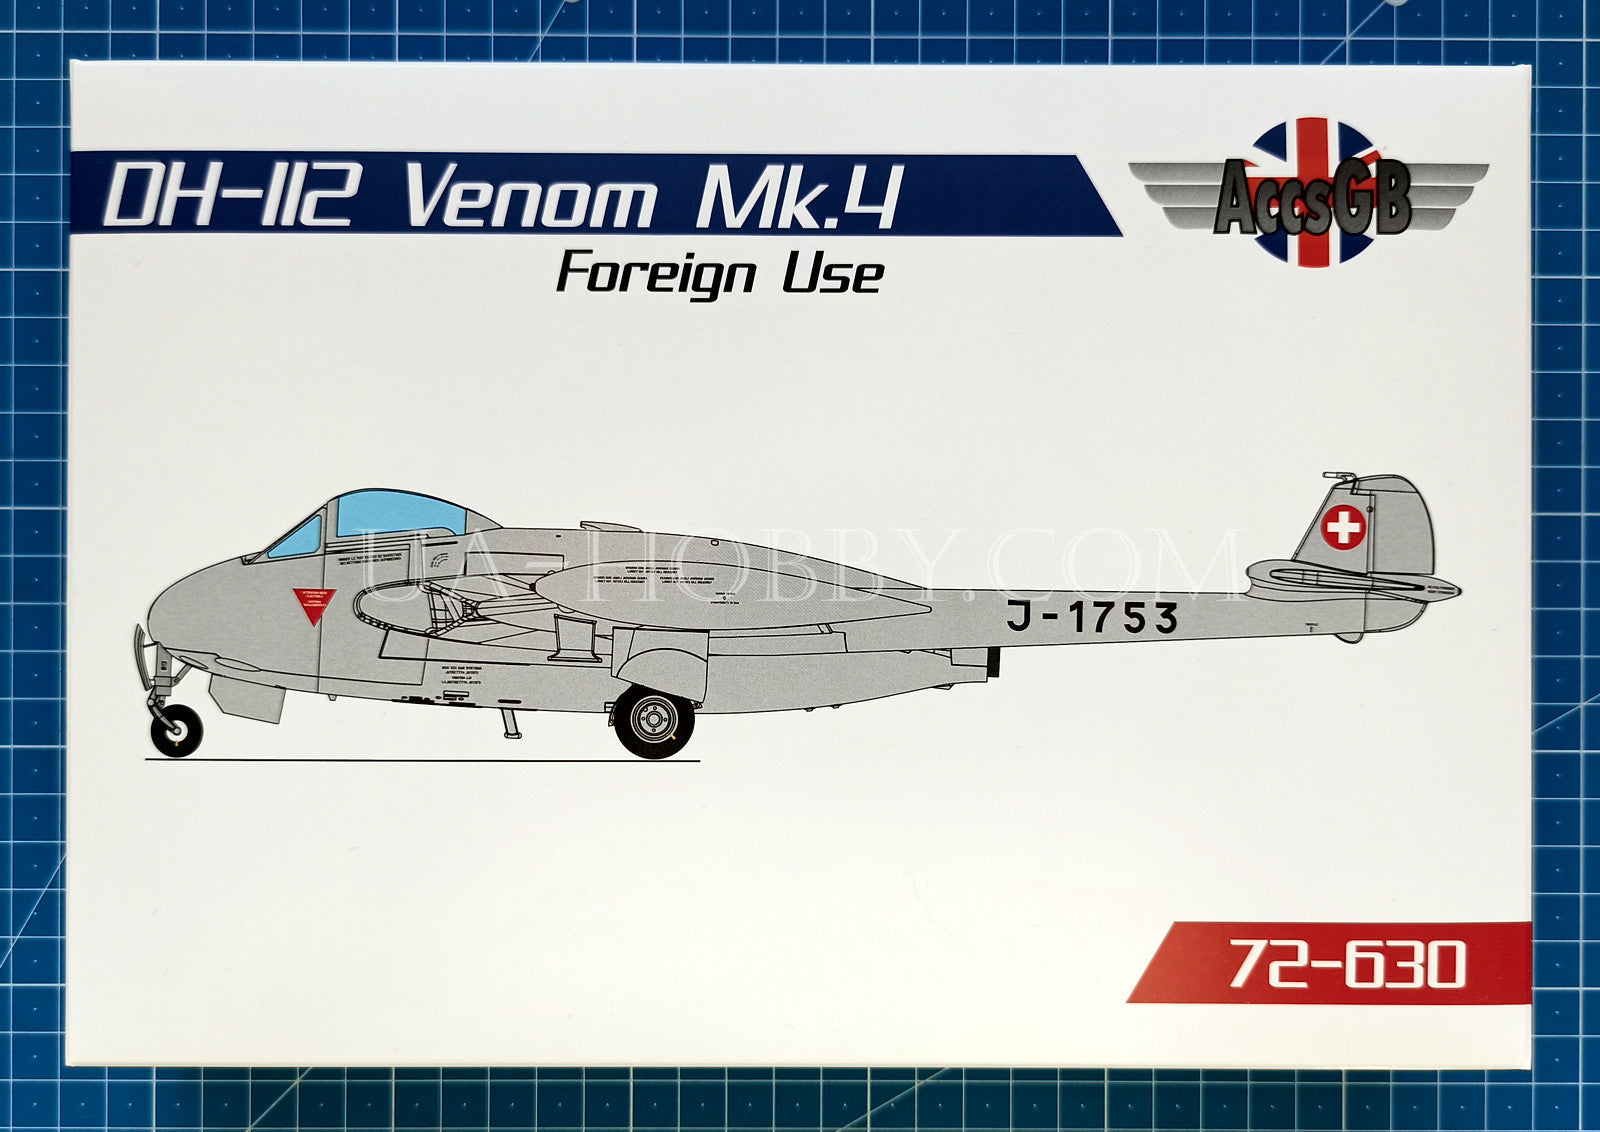 1/72 DH-112 Venom Mk.4 Foreign Use. AccsGB 72-630 – UA-hobby